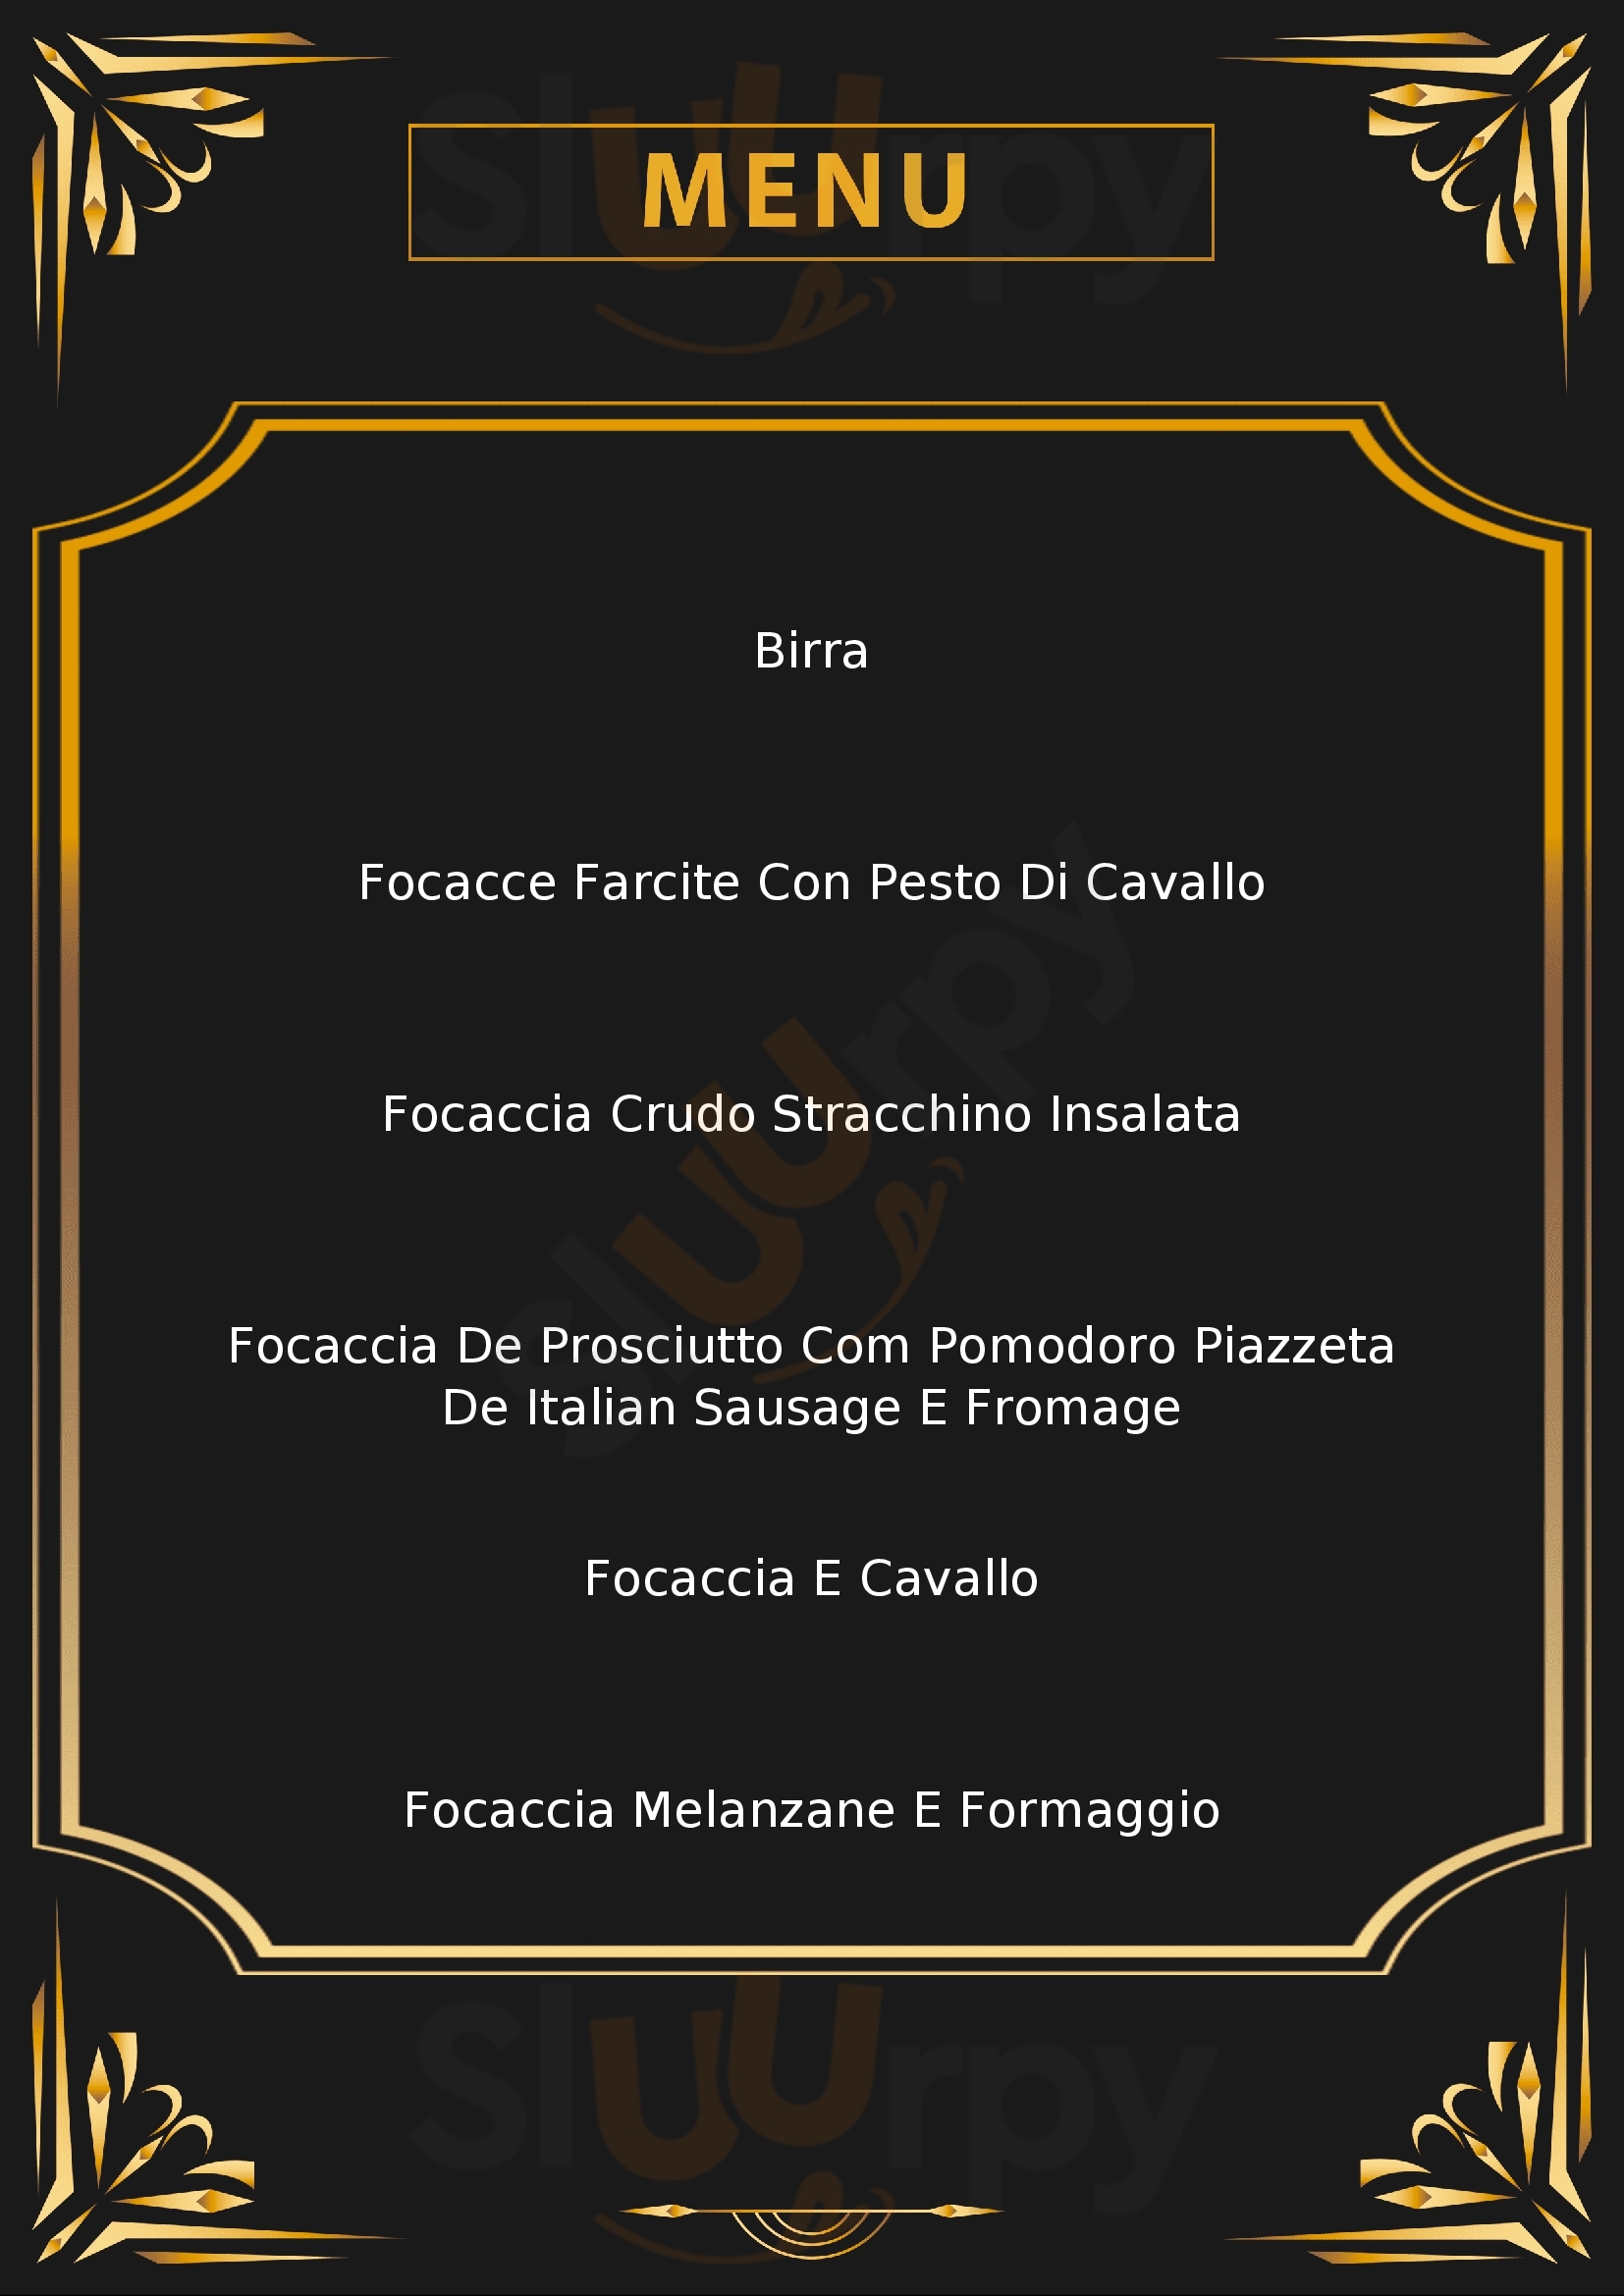 Frank Focaccia Parma menù 1 pagina